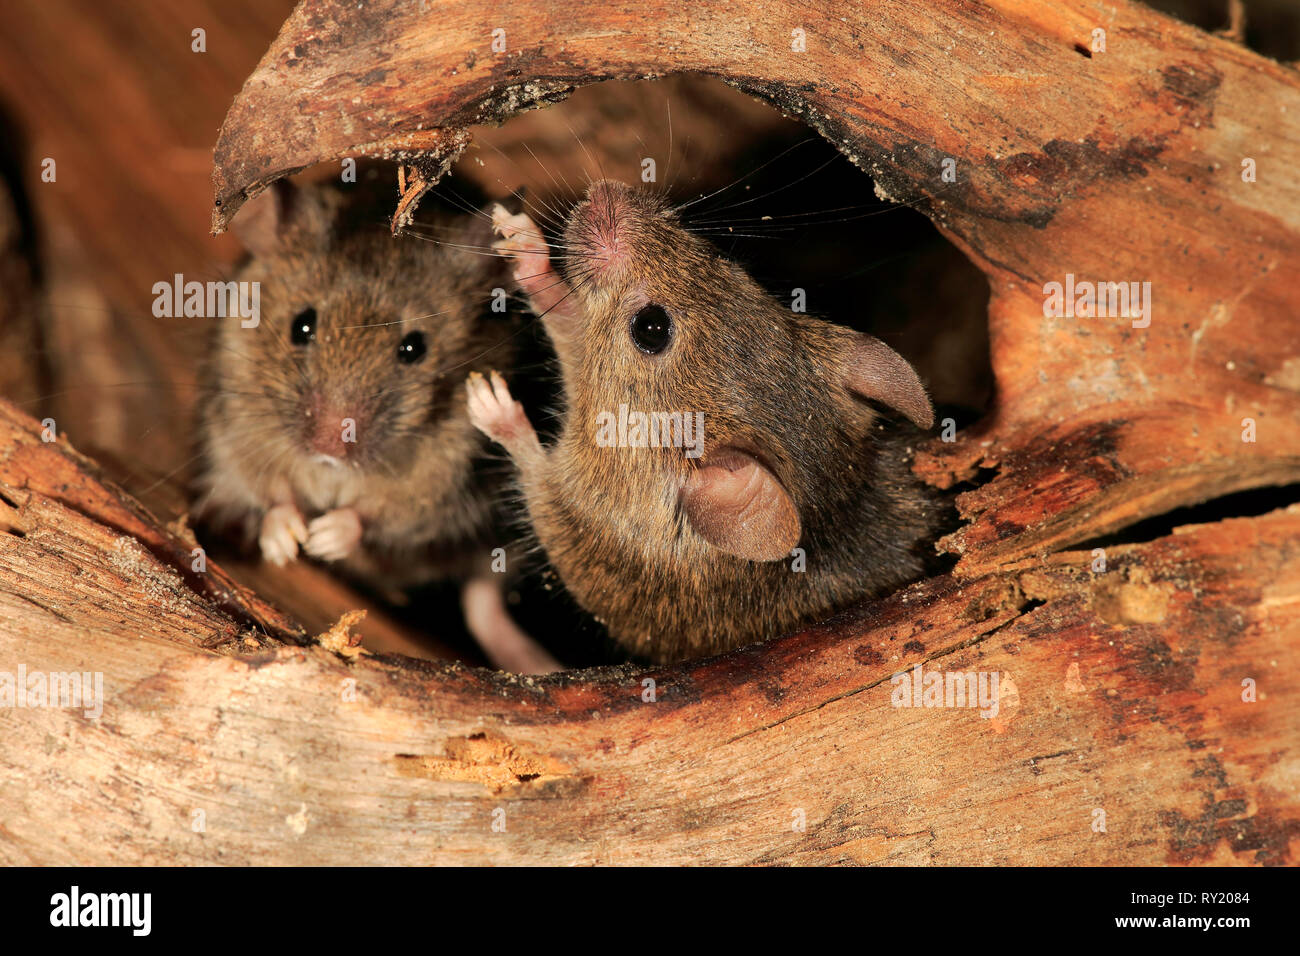 Los ratones de la casa, Renania Palatinado, Alemania, Europa (Mus musculus) Foto de stock